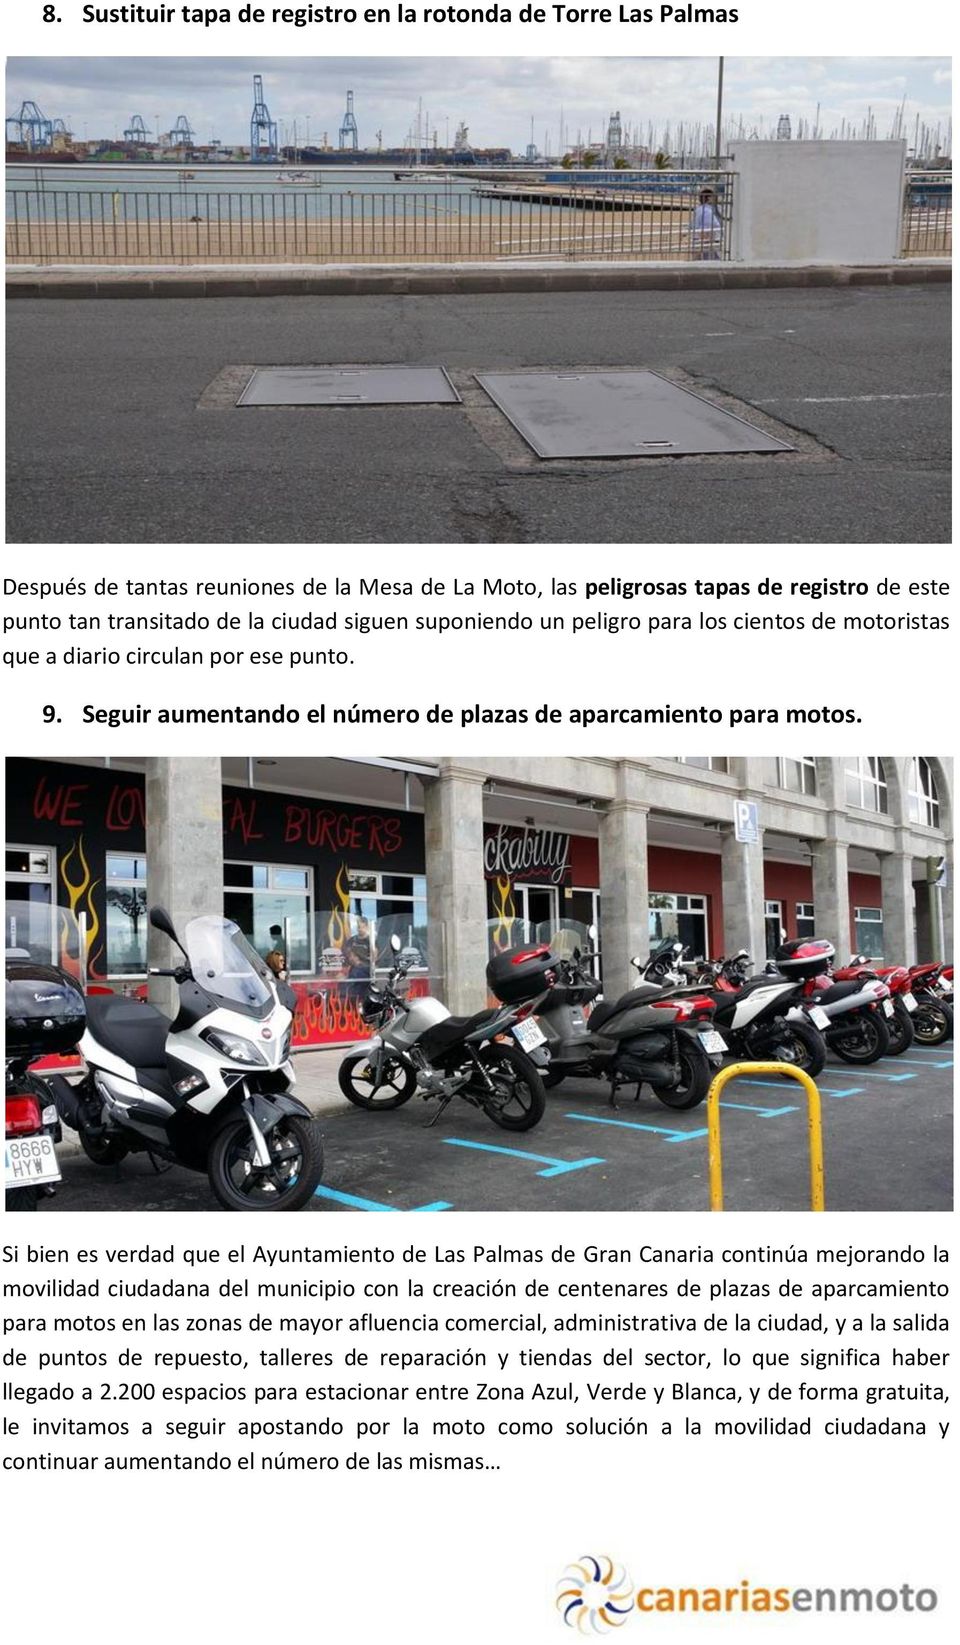 Si bien es verdad que el Ayuntamiento de Las Palmas de Gran Canaria continúa mejorando la movilidad ciudadana del municipio con la creación de centenares de plazas de aparcamiento para motos en las